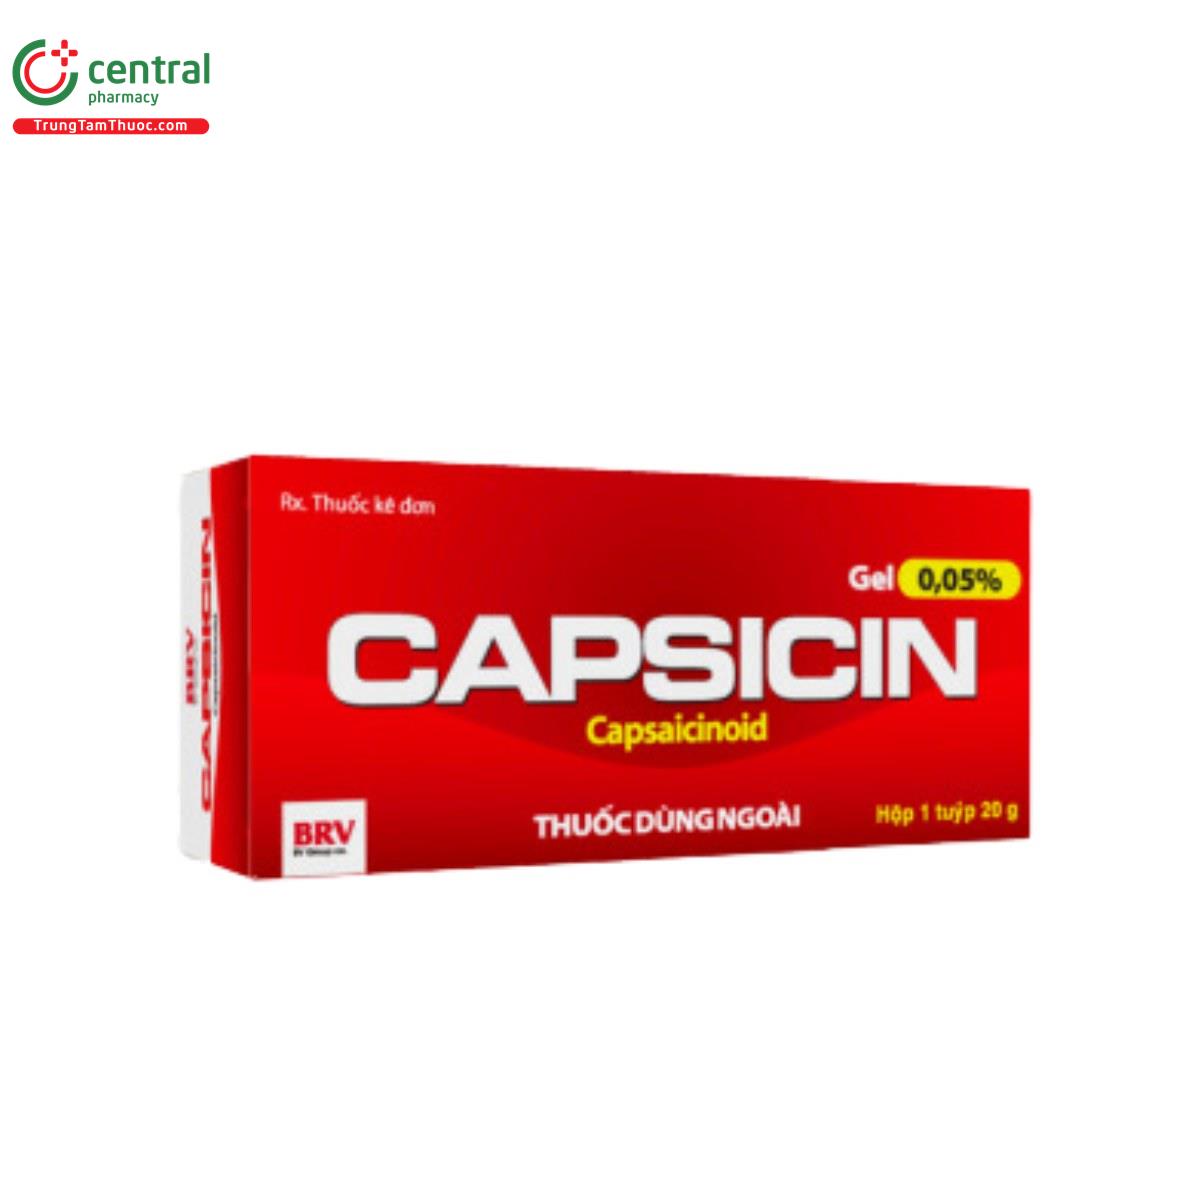 capsicin gel 005 3 C1777